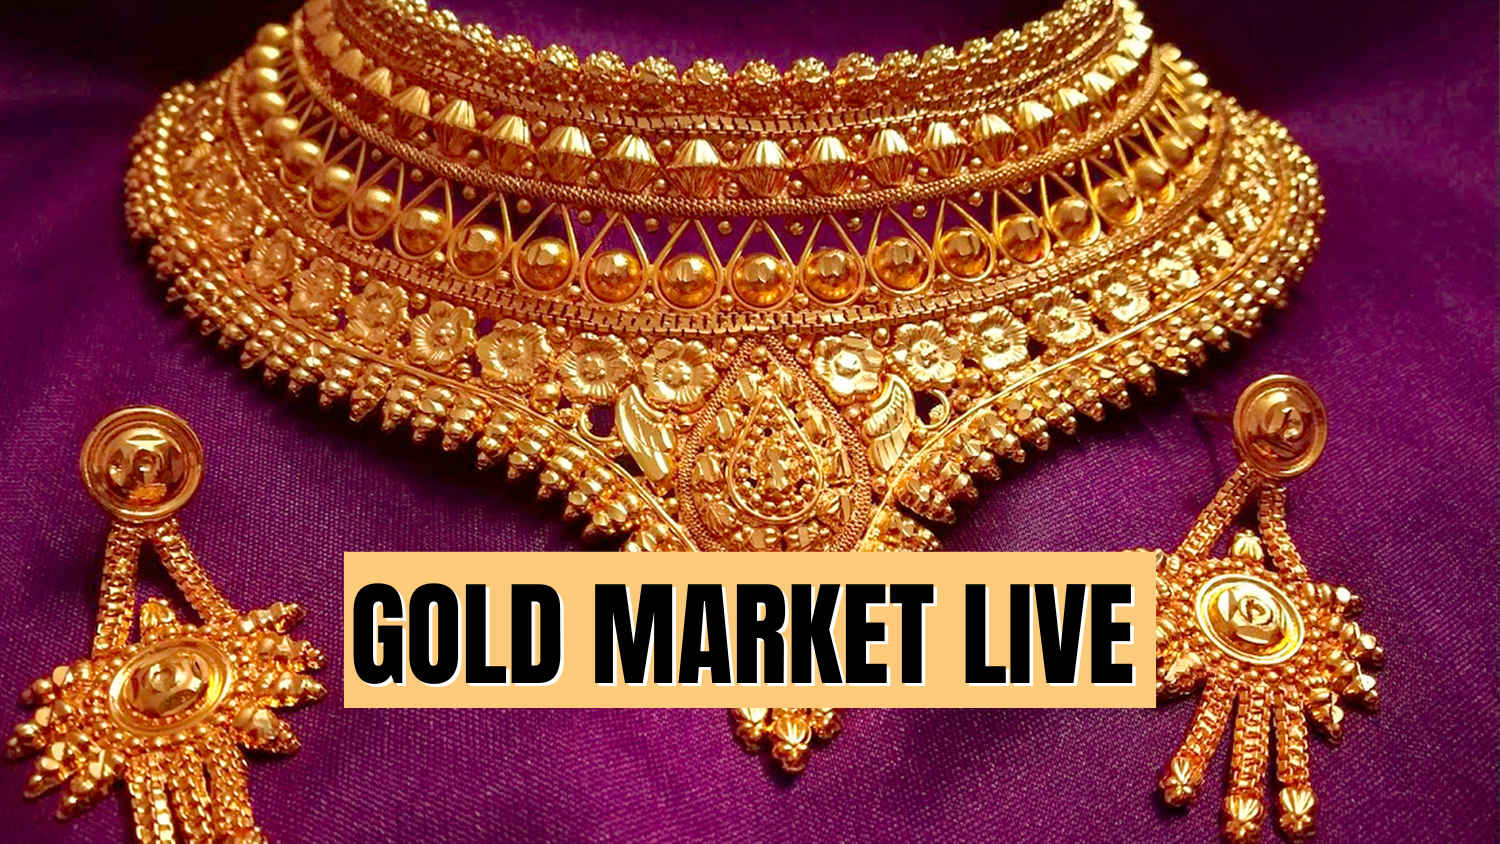 Gold Market Live: ఒకే పందాలో పరిగెడుతున్న గోల్డ్ రేట్.!